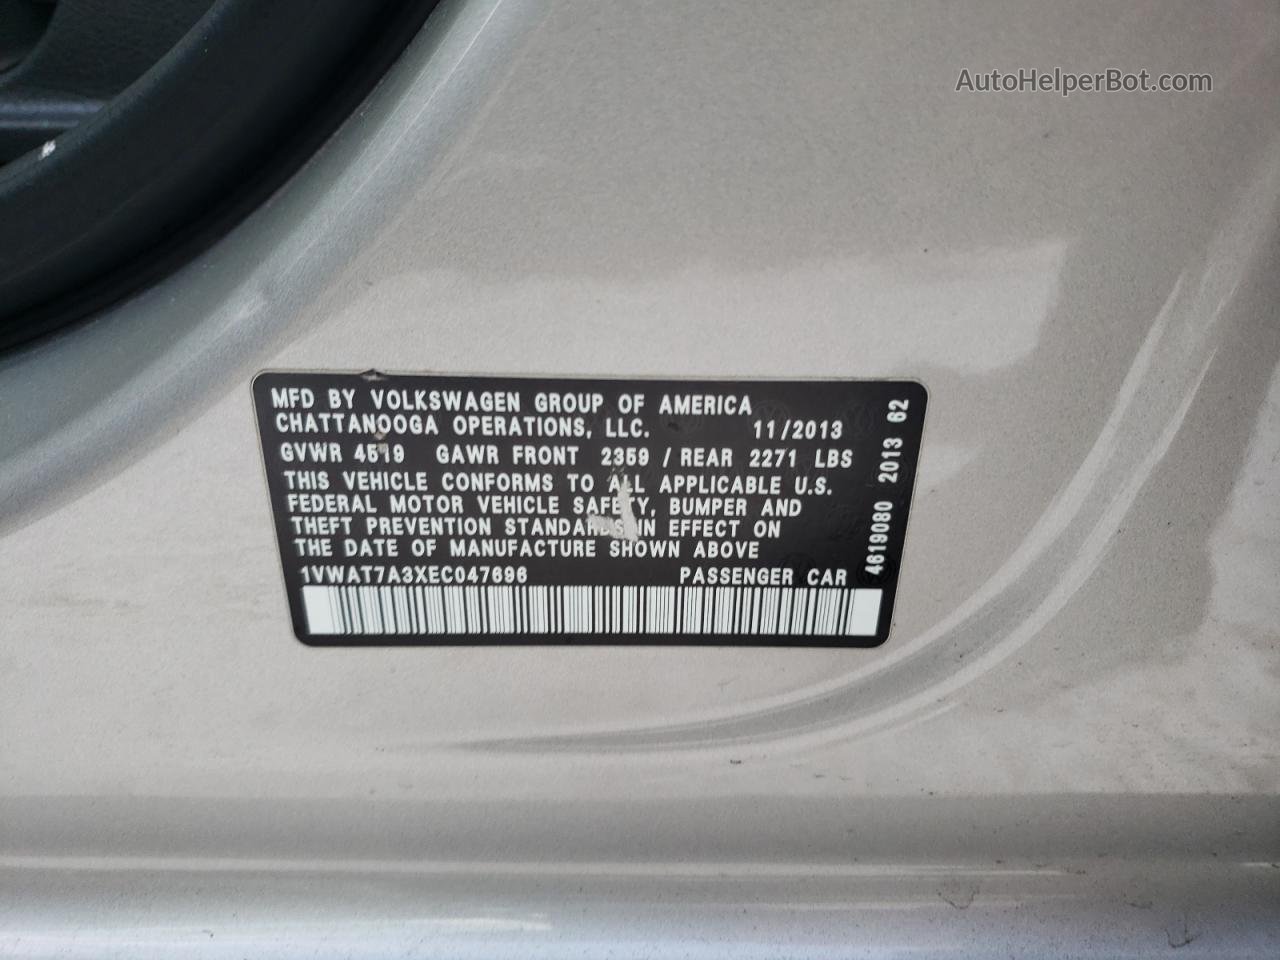 2014 Volkswagen Passat S Gray vin: 1VWAT7A3XEC047696